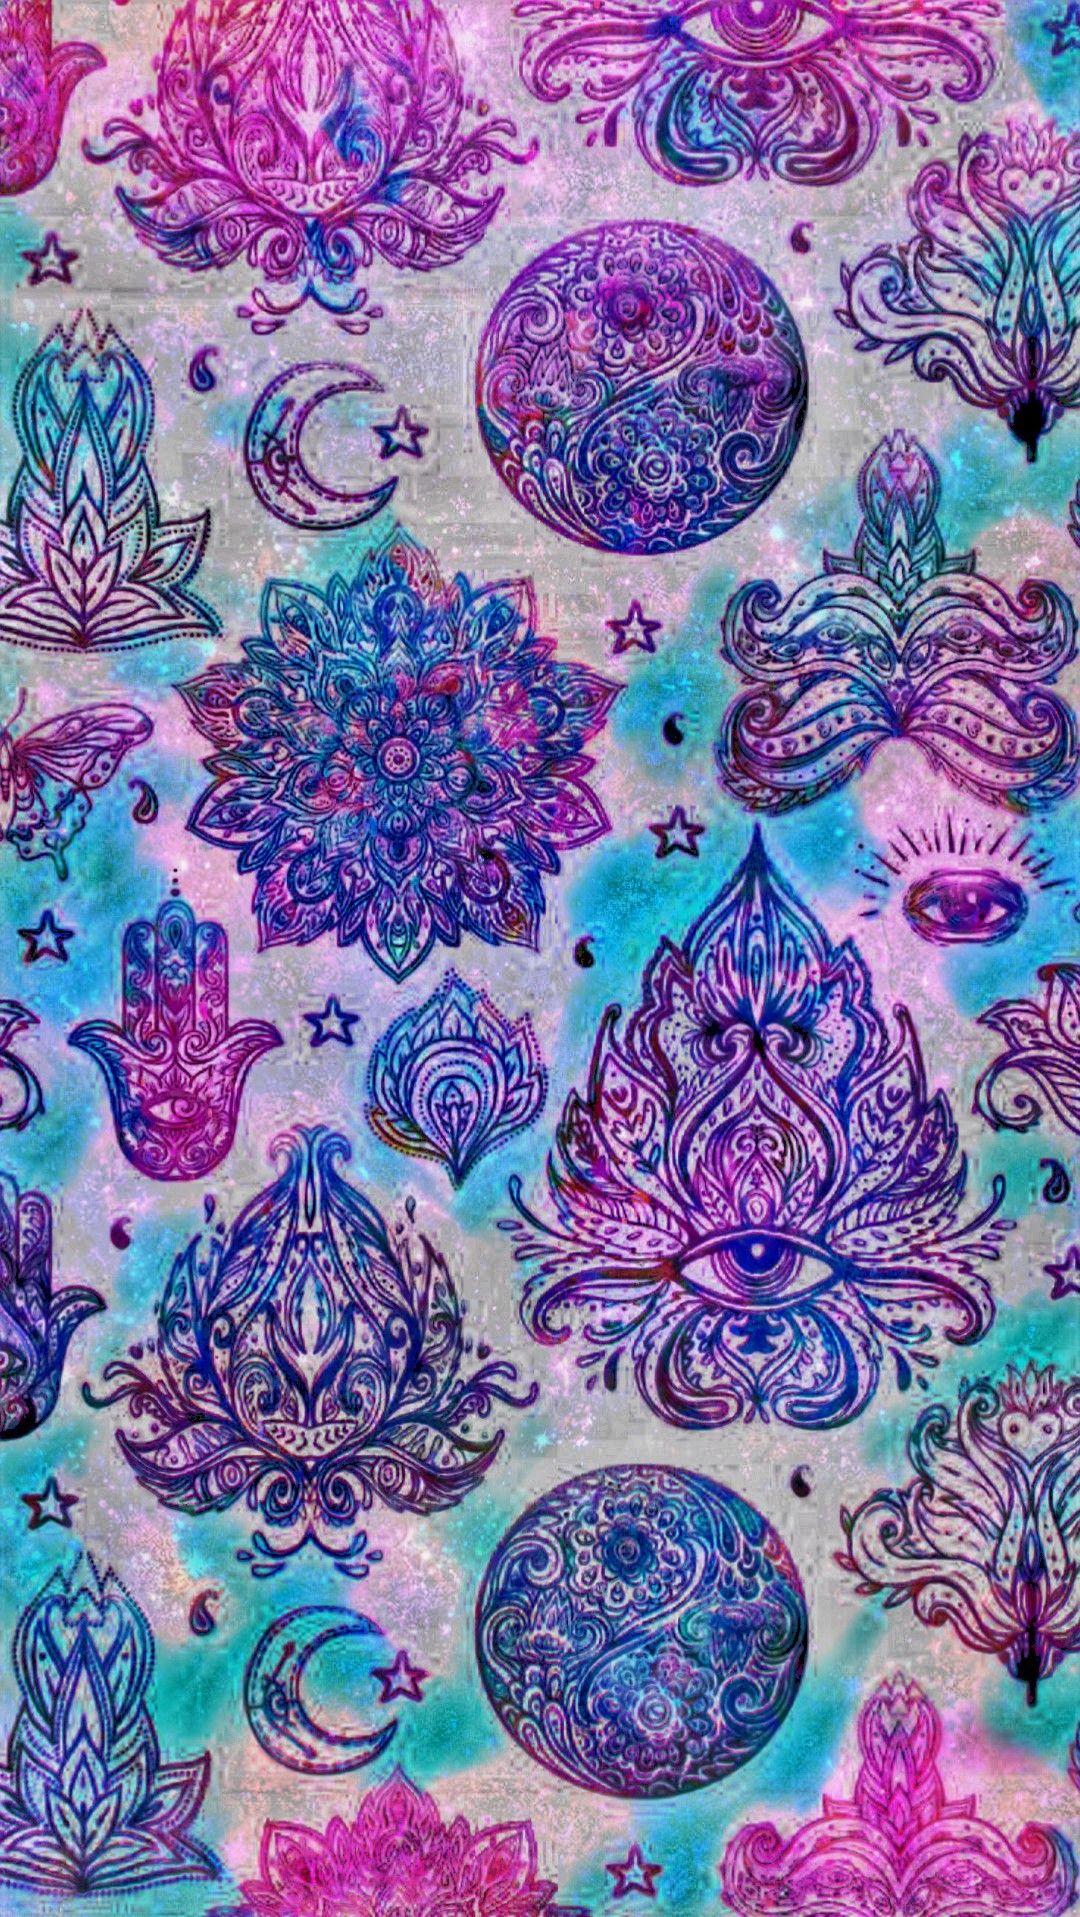 Hamsa Mandalas Galaxy, made by me #patterns #purple #glitter